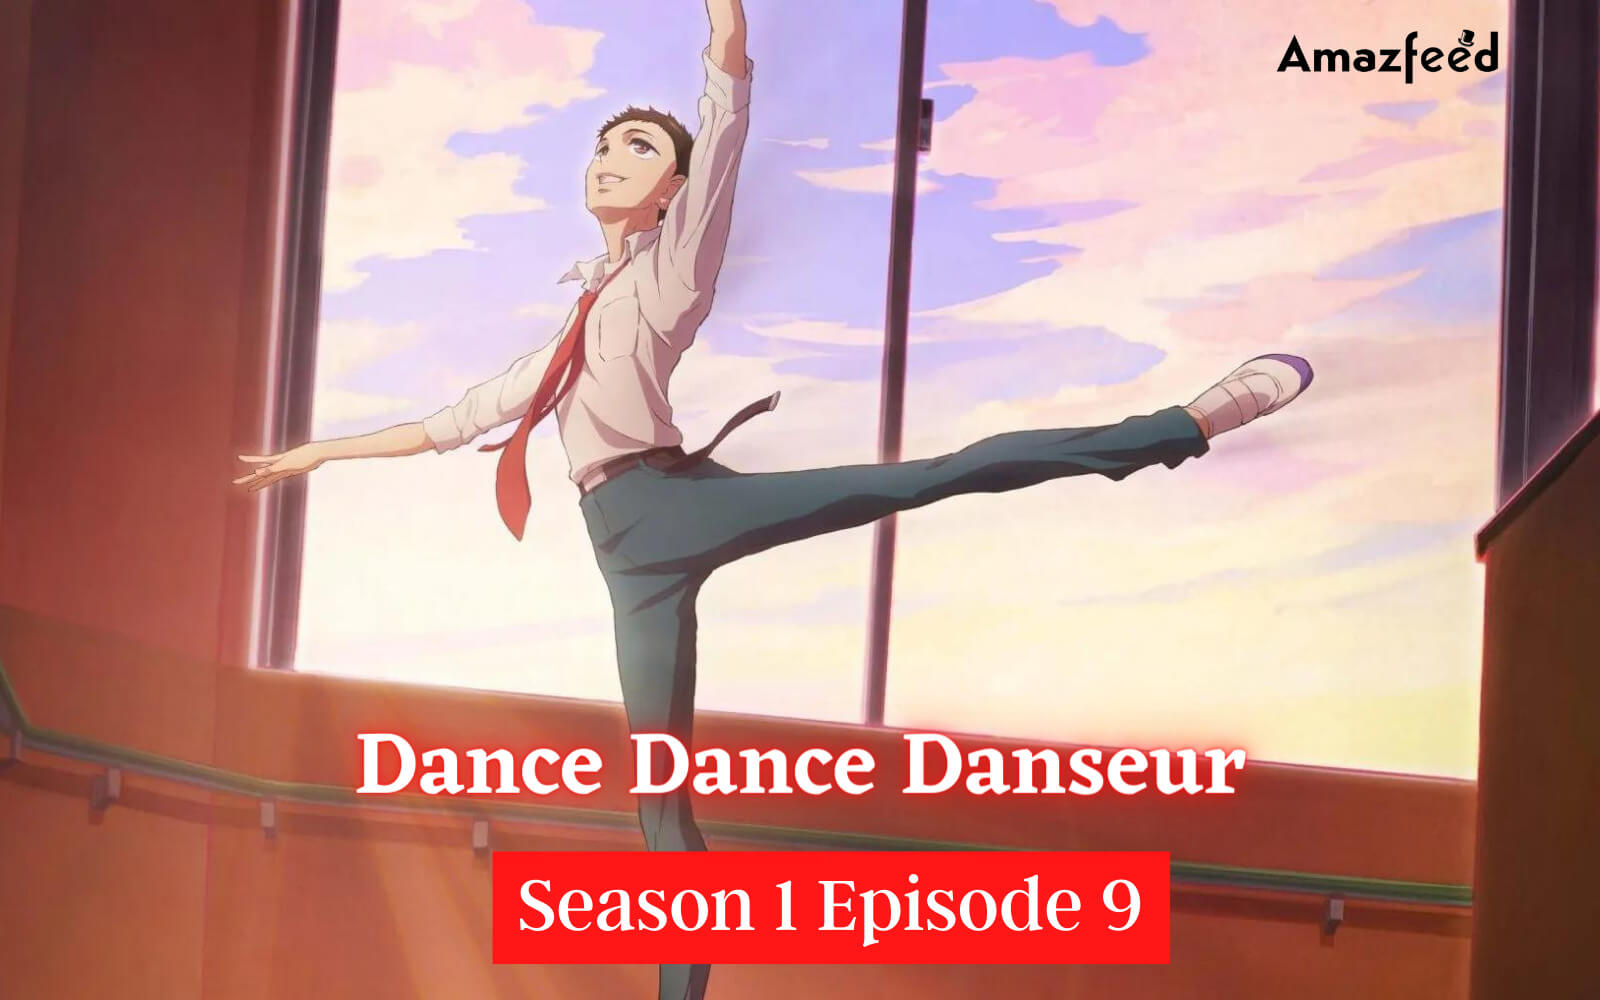 Dance Dance Danseur Season 1 Episode 9 Release date